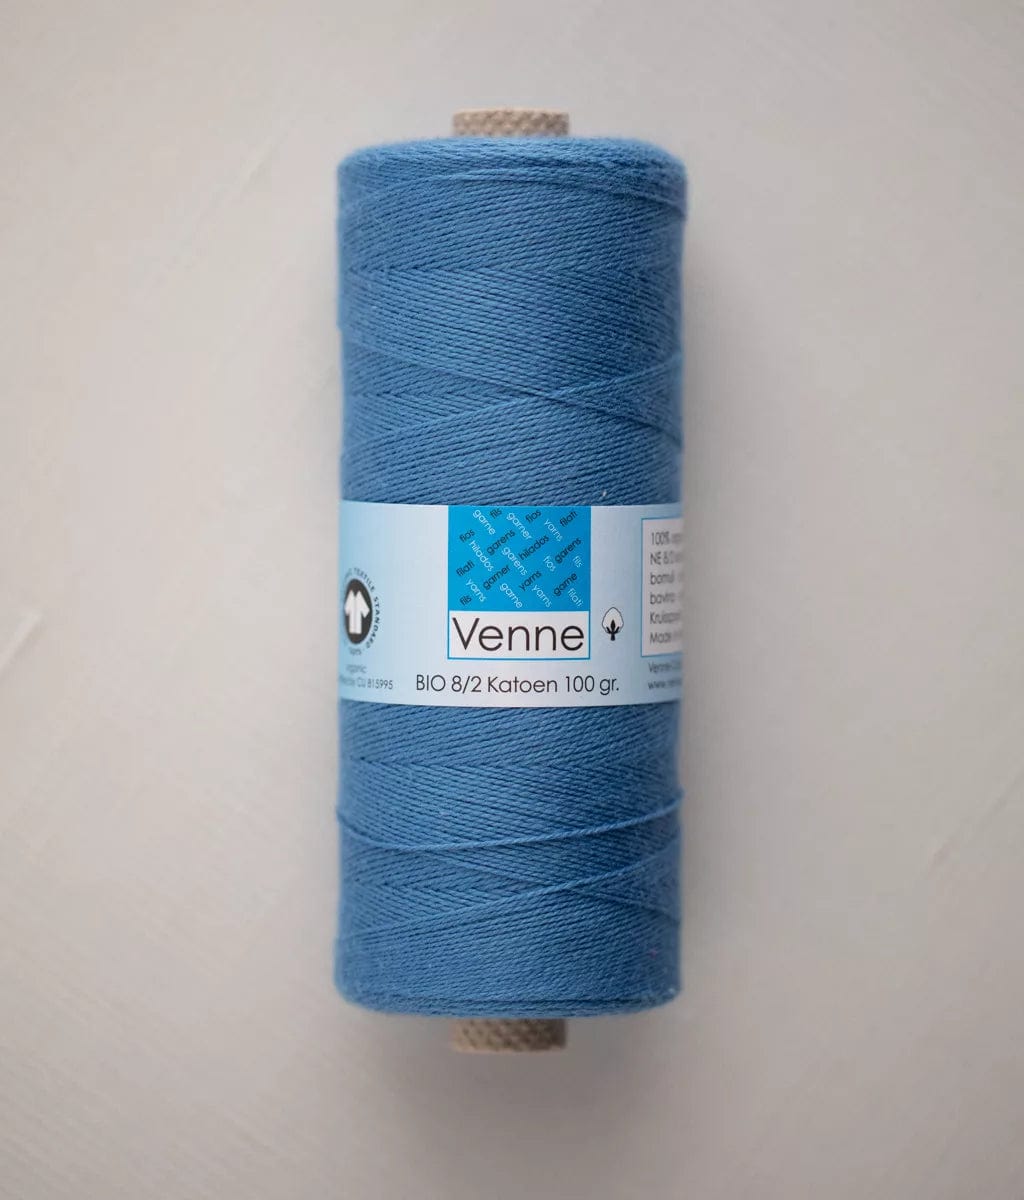 Venne Weaving Yarn Egyptian Blue Venne 8/2